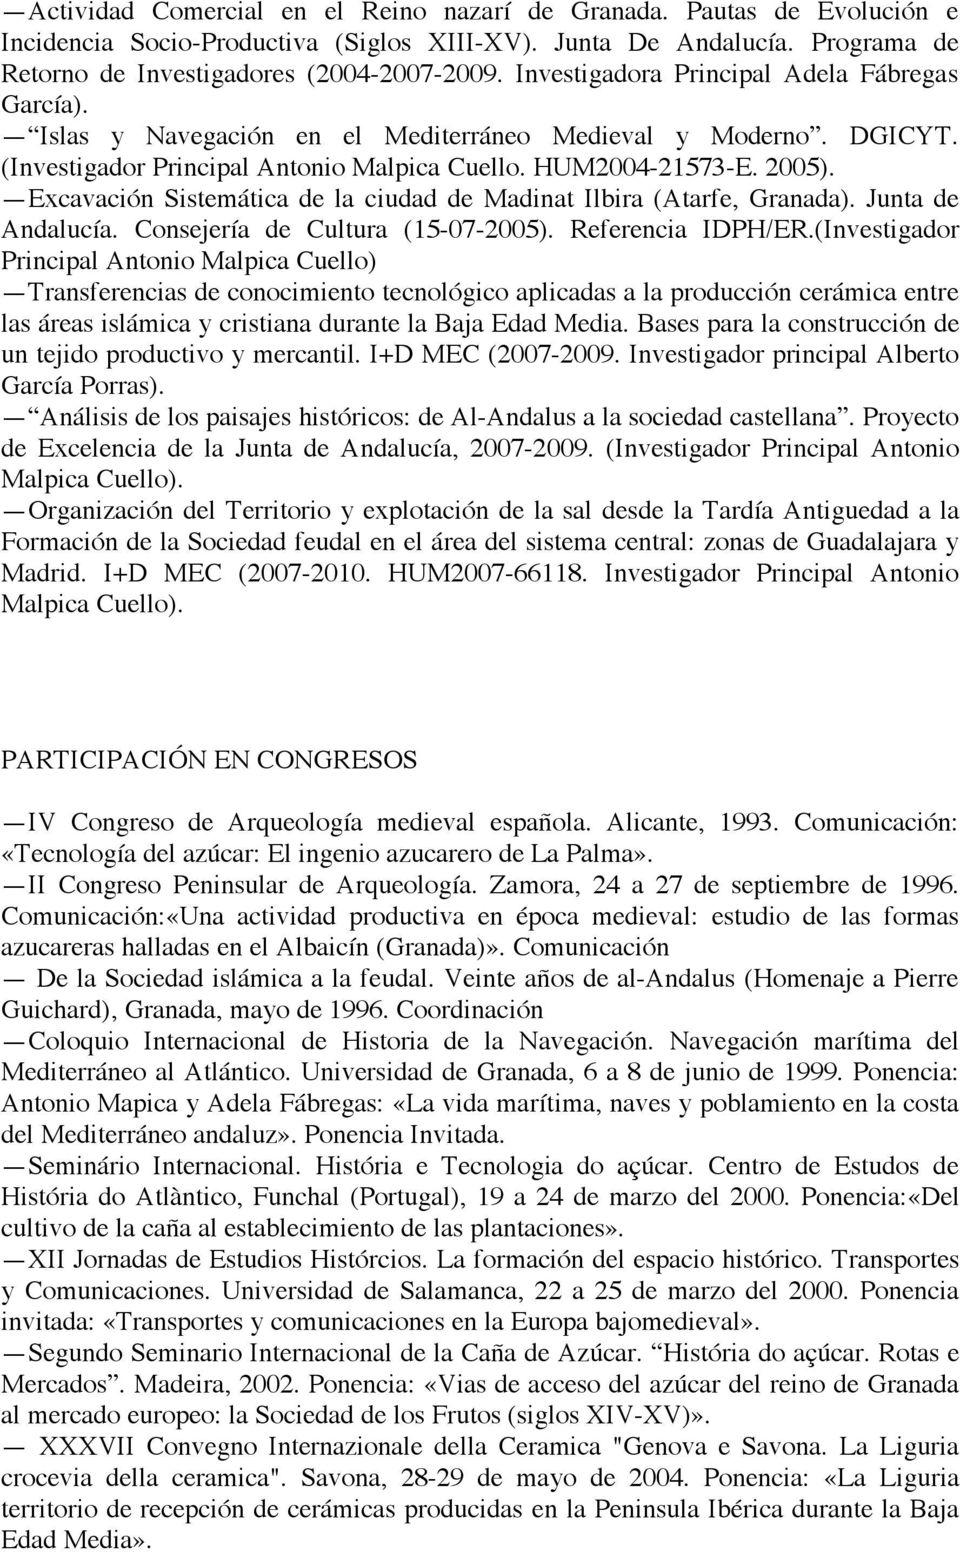 Excavación Sistemática de la ciudad de Madinat Ilbira (Atarfe, Granada). Junta de Andalucía. Consejería de Cultura (15-07-2005). Referencia IDPH/ER.